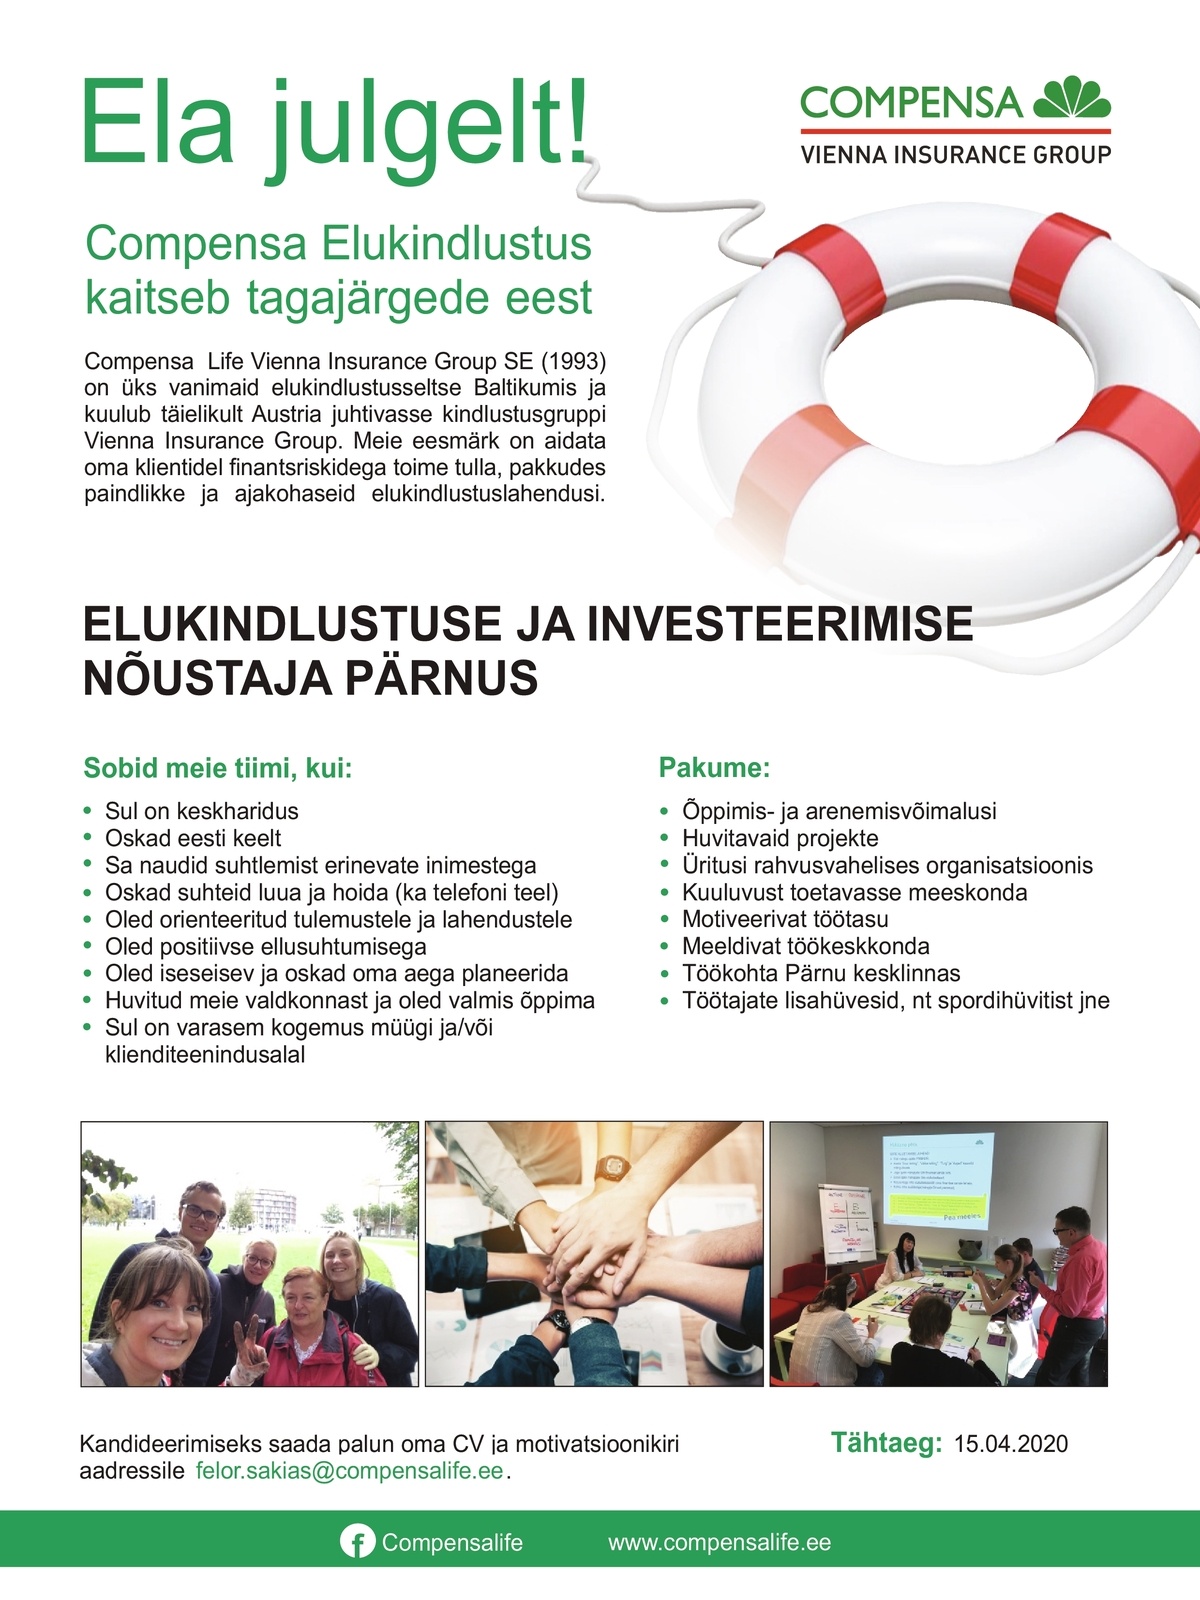 Compensa Life Vienna Insurance Group SE Elukindlustuse ja investeerimise nõustaja Pärnus